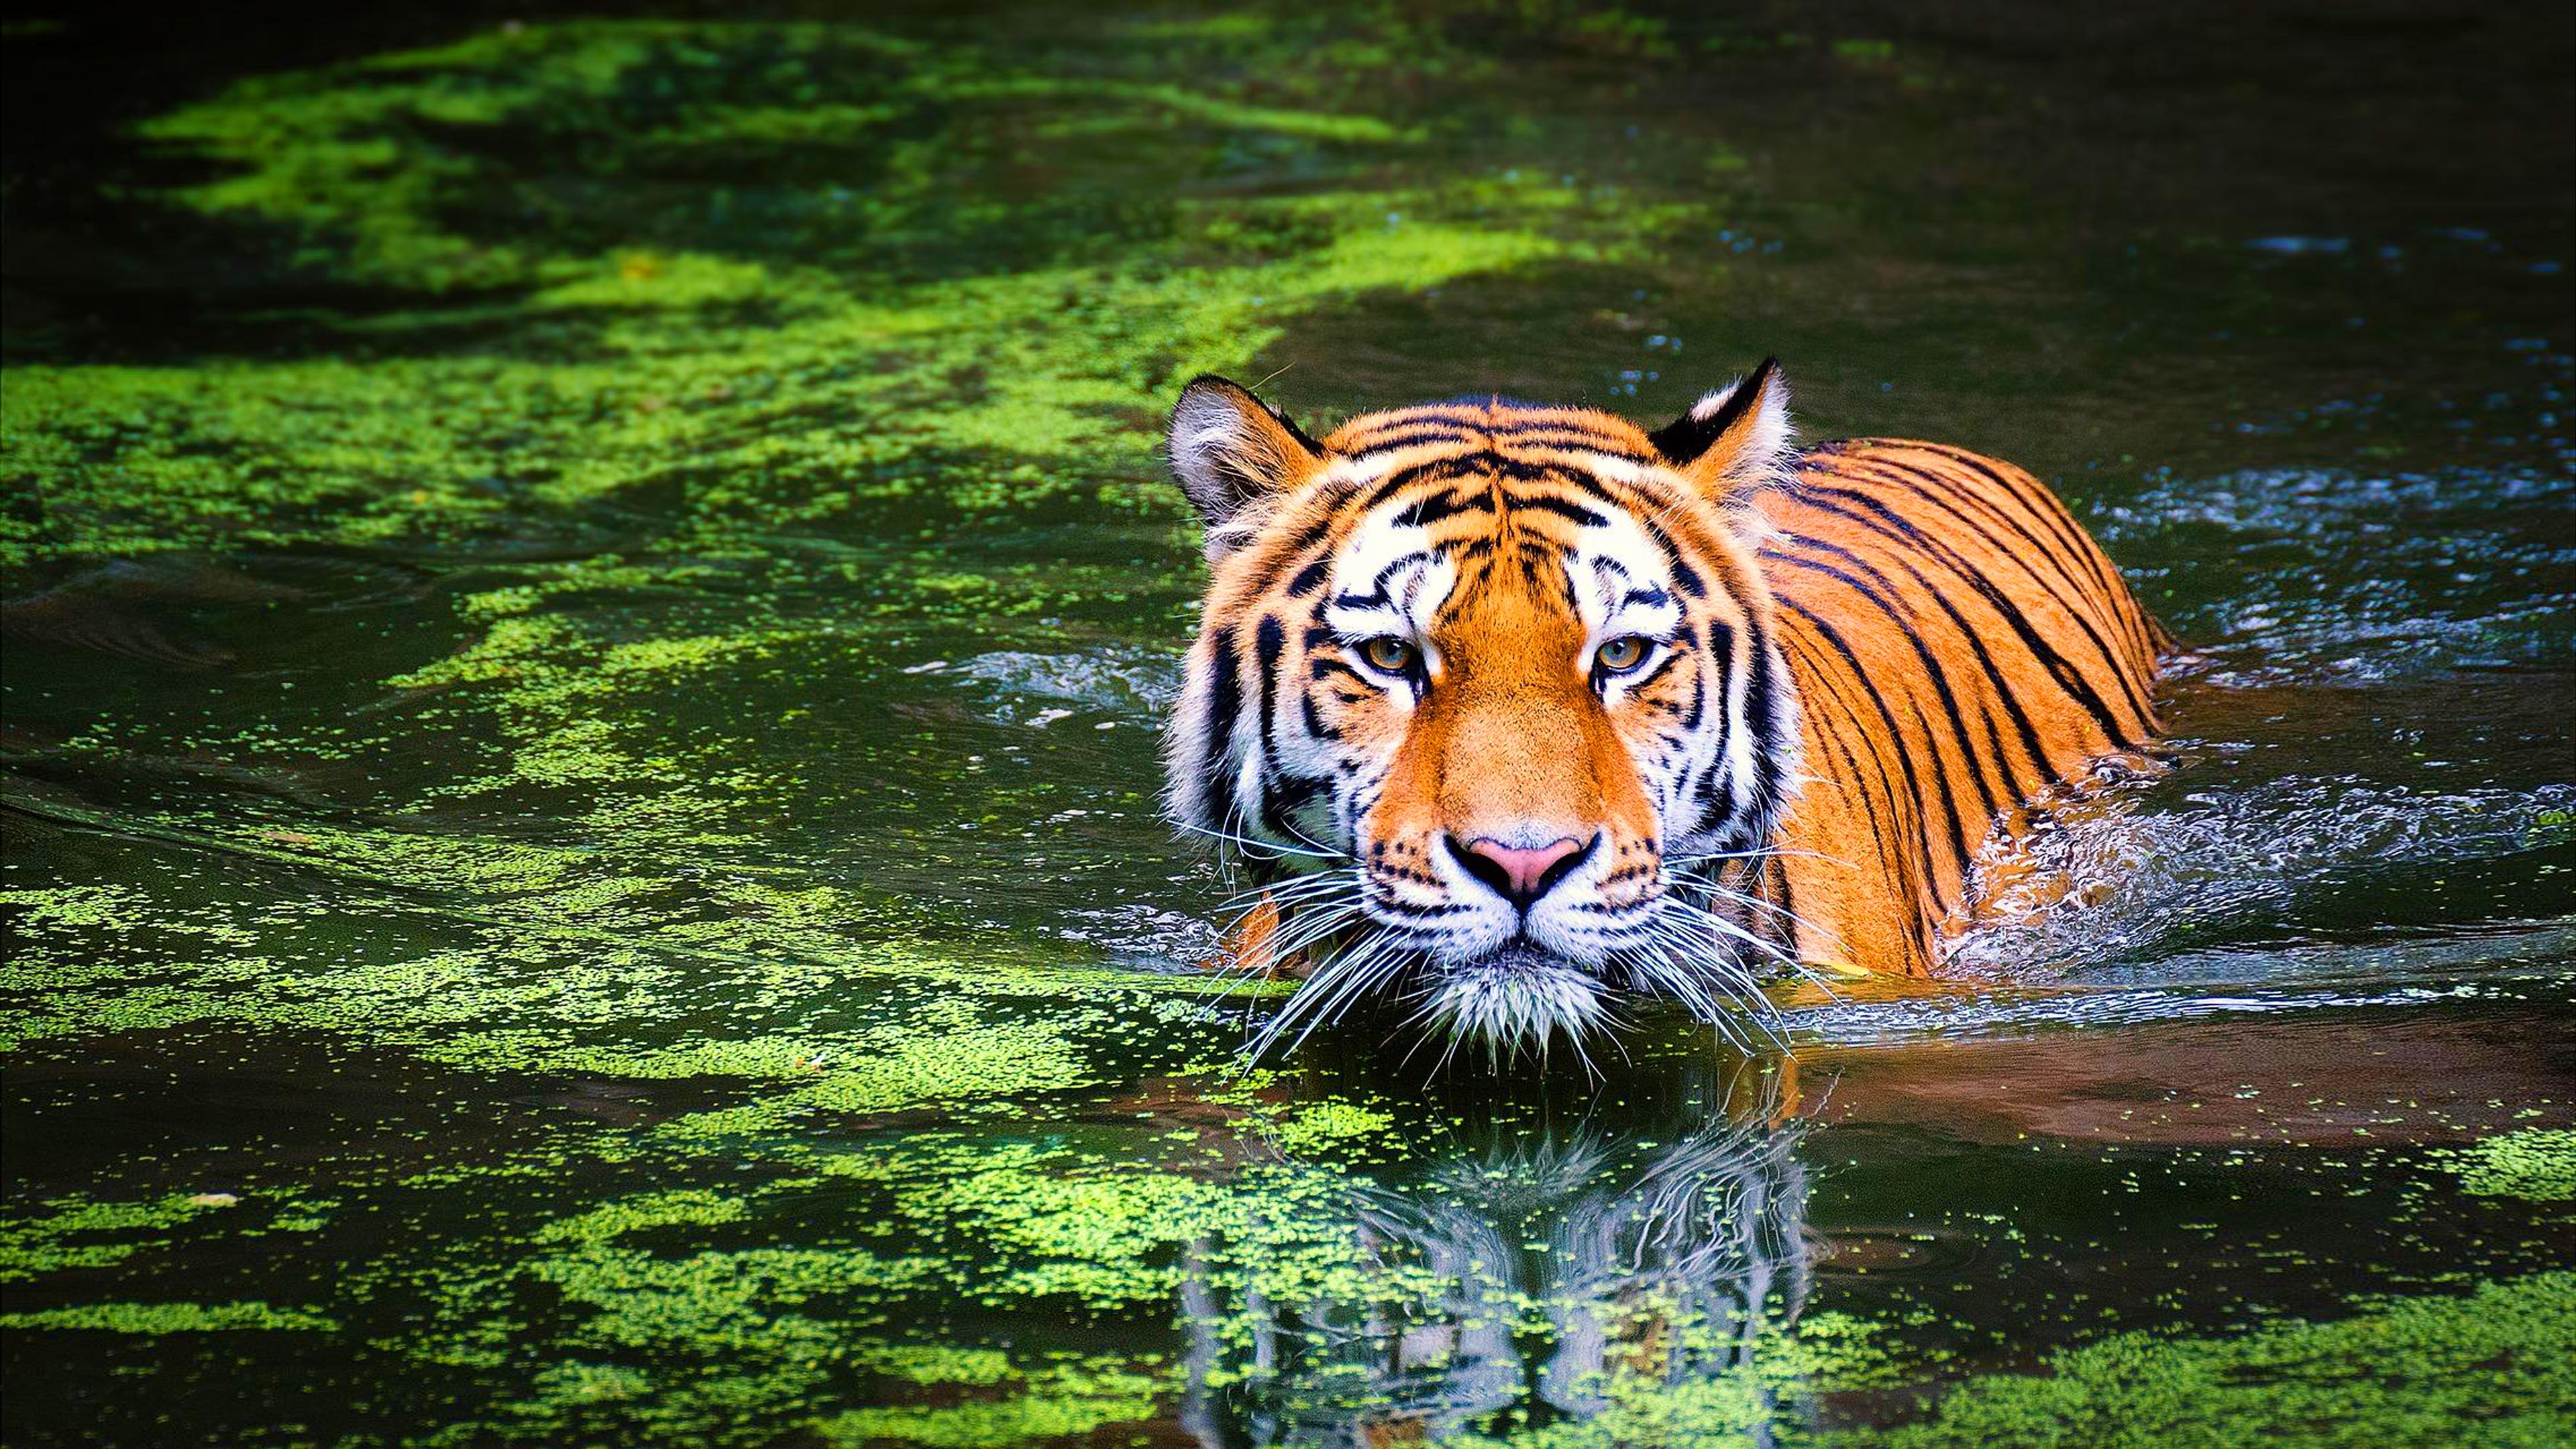 Nếu bạn muốn thấy một hình nền thú hoang tuyệt đẹp cho điện thoại của mình, hãy thưởng thức Bengal Tiger Wallpaper này và ngắm nhìn sự uy nghi của con hổ với mảnh đất xanh ngút ngàn phía sau.